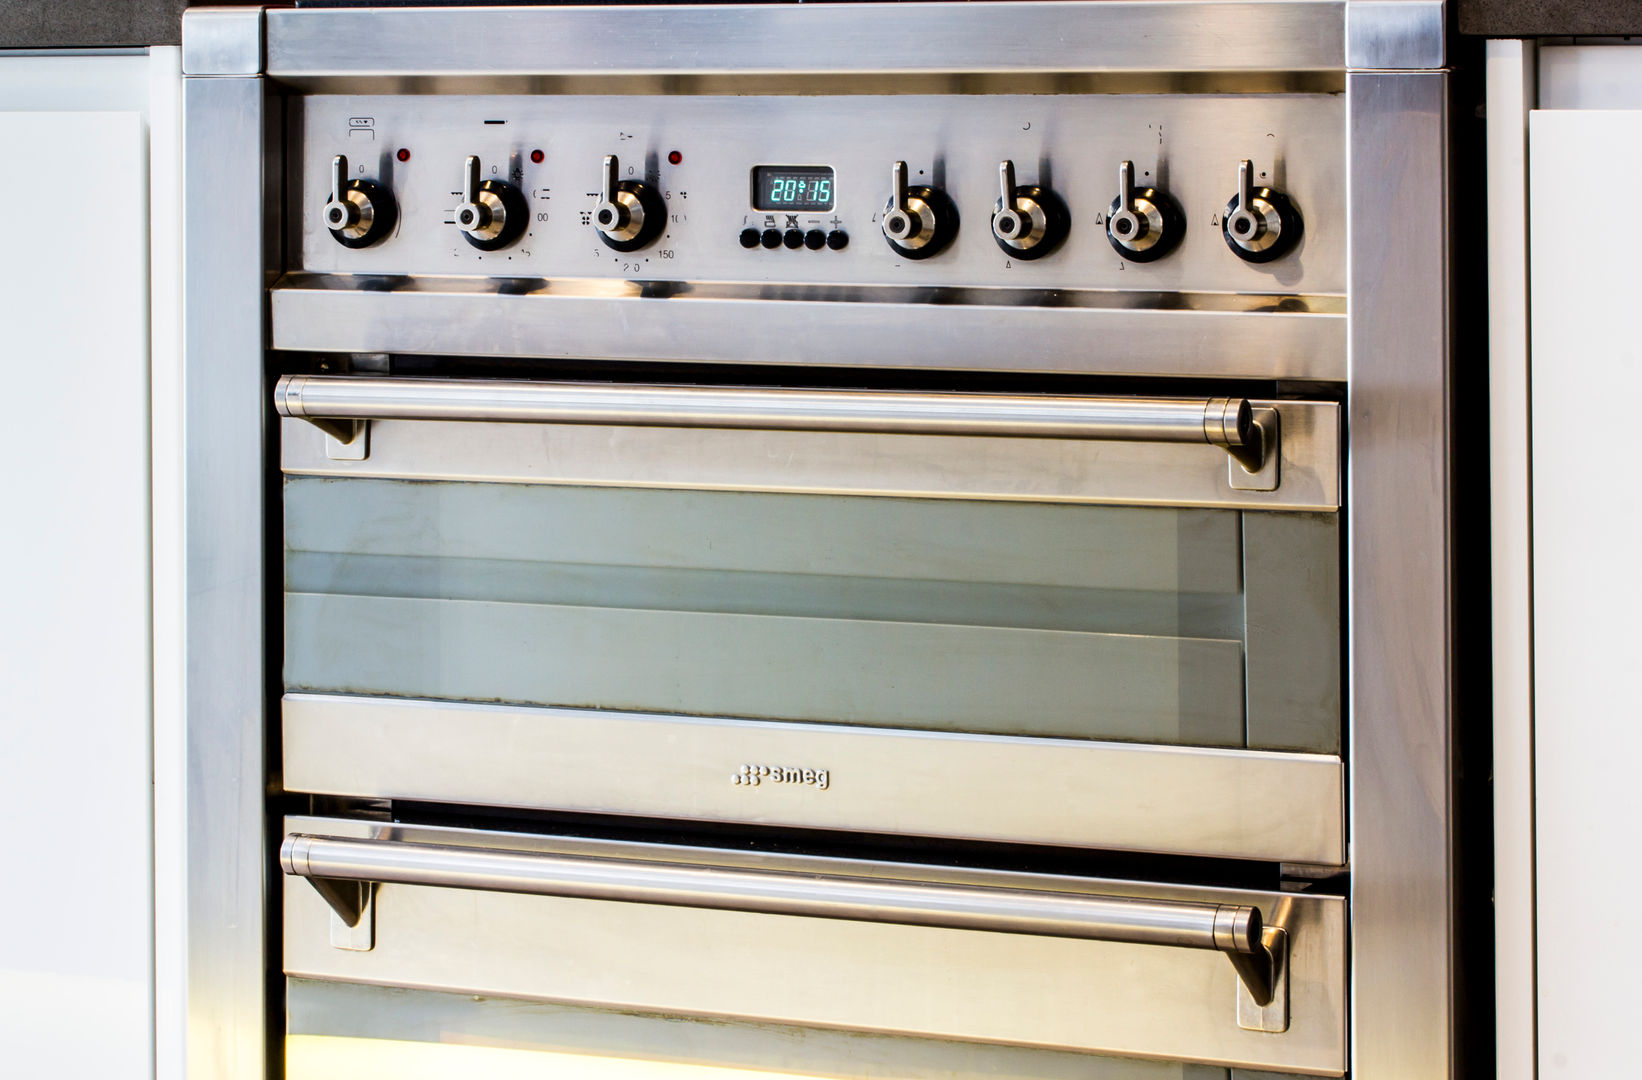 Modern cooker and oven Affleck Property Services Cocinas de estilo moderno Accesorios y textiles